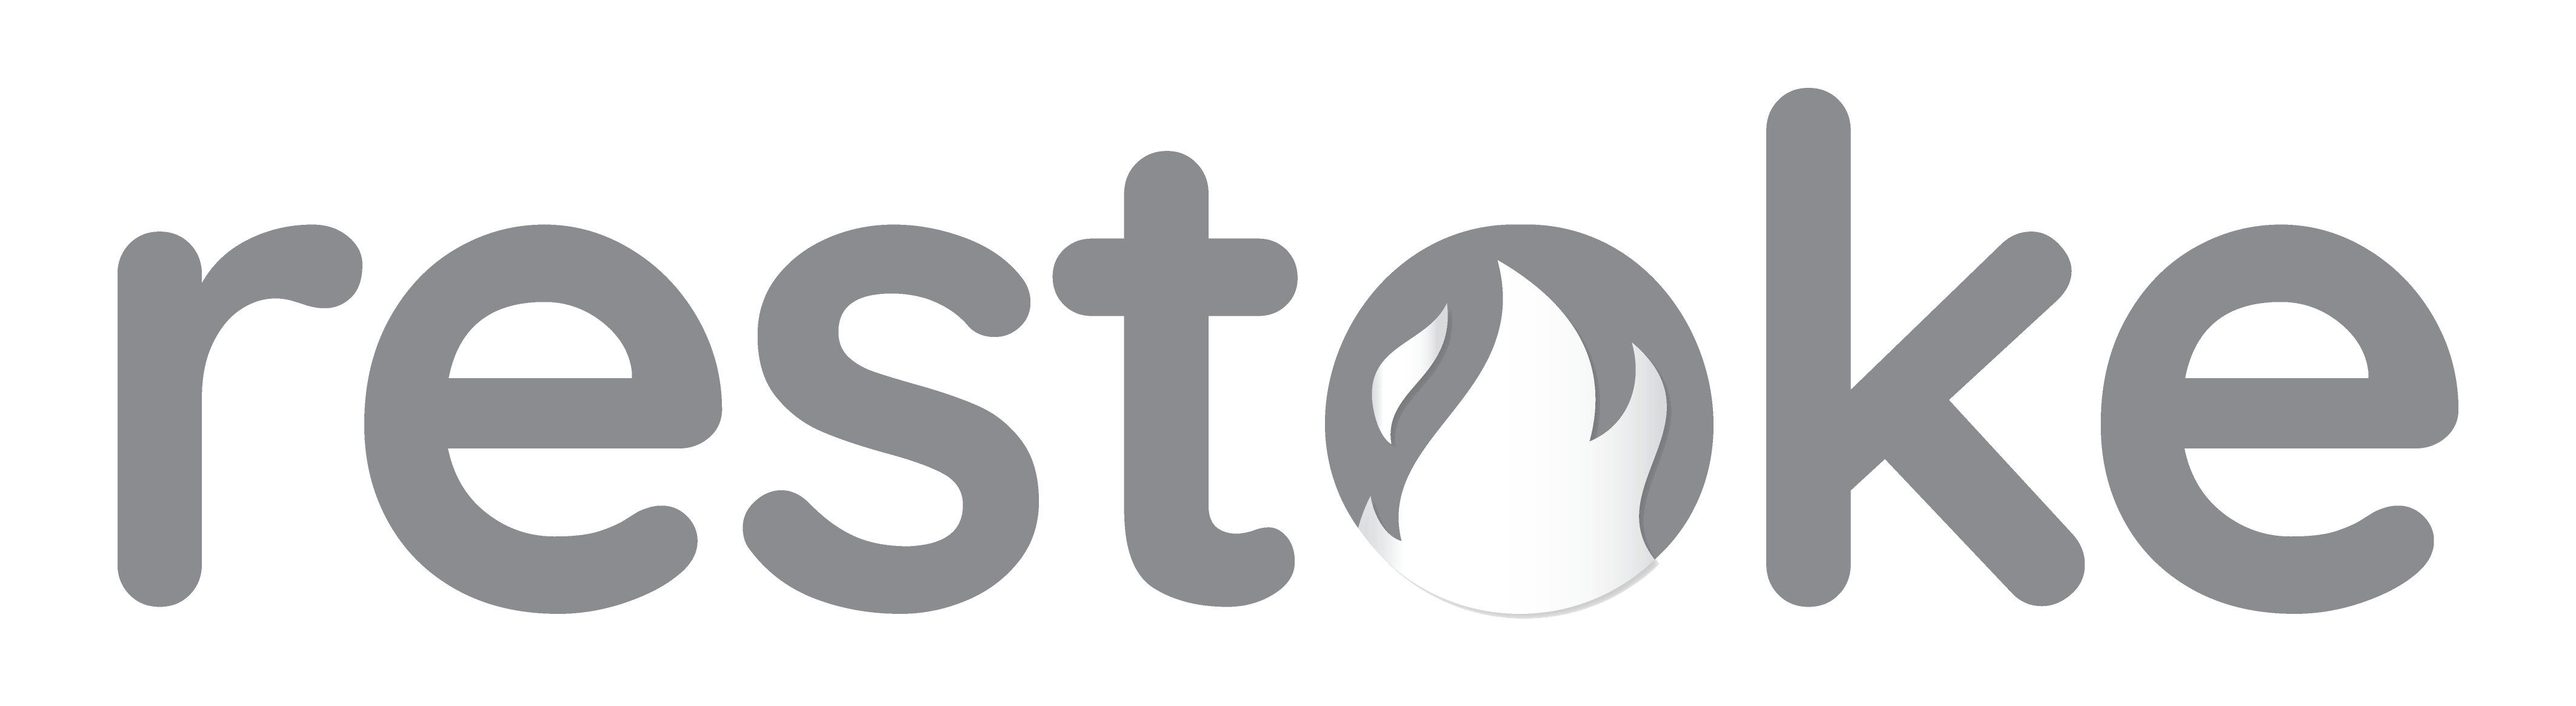 Restoke Logo GS -01